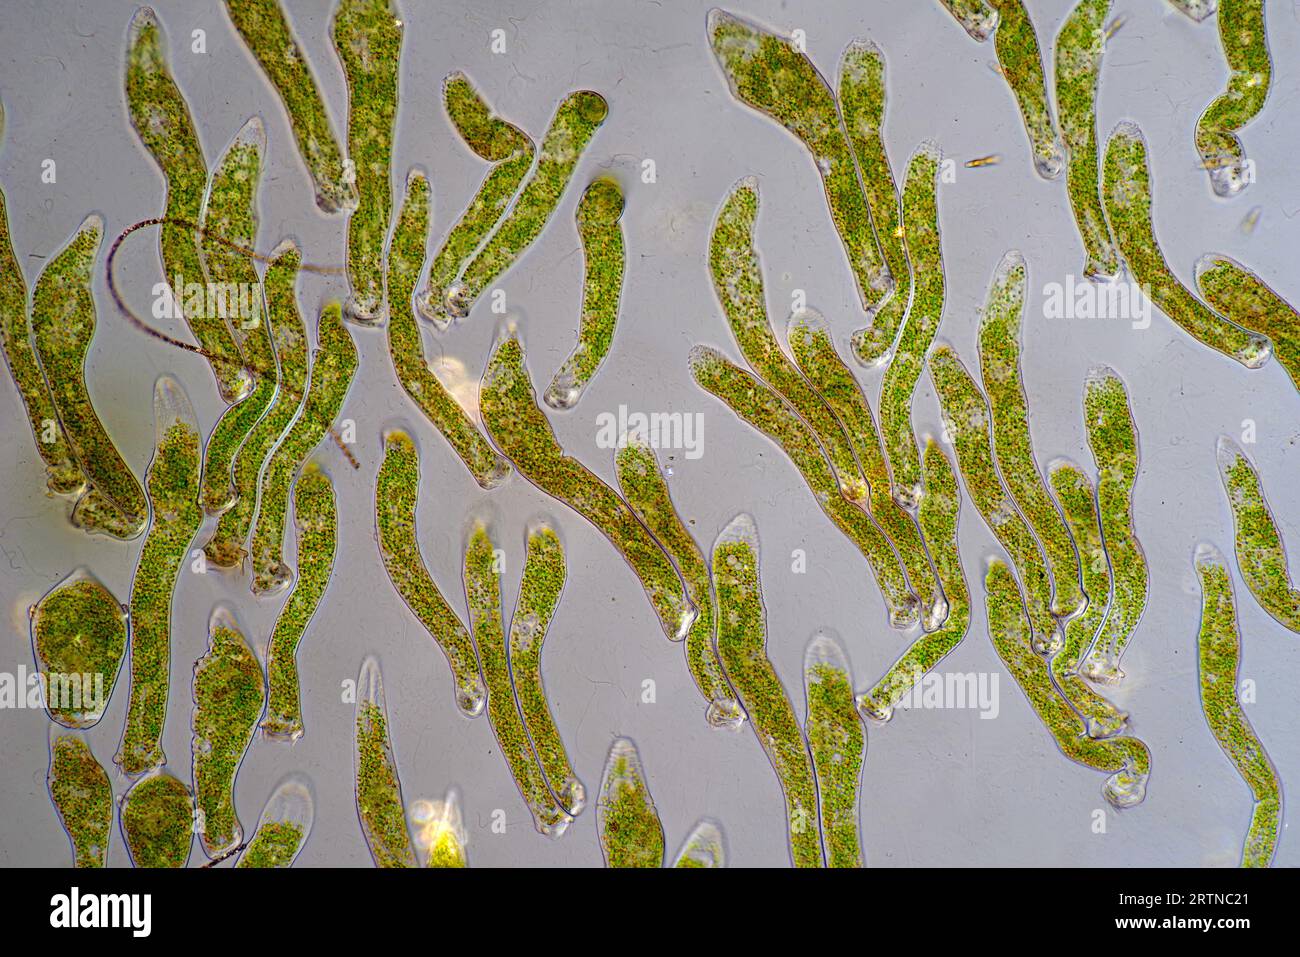 Das Bild zeigt Ophrydium sp. ( Eine Art kolonialer Ziliaten), fotografiert durch das Mikroskop in polarisiertem Licht bei einer Vergrößerung von 100X Stockfoto